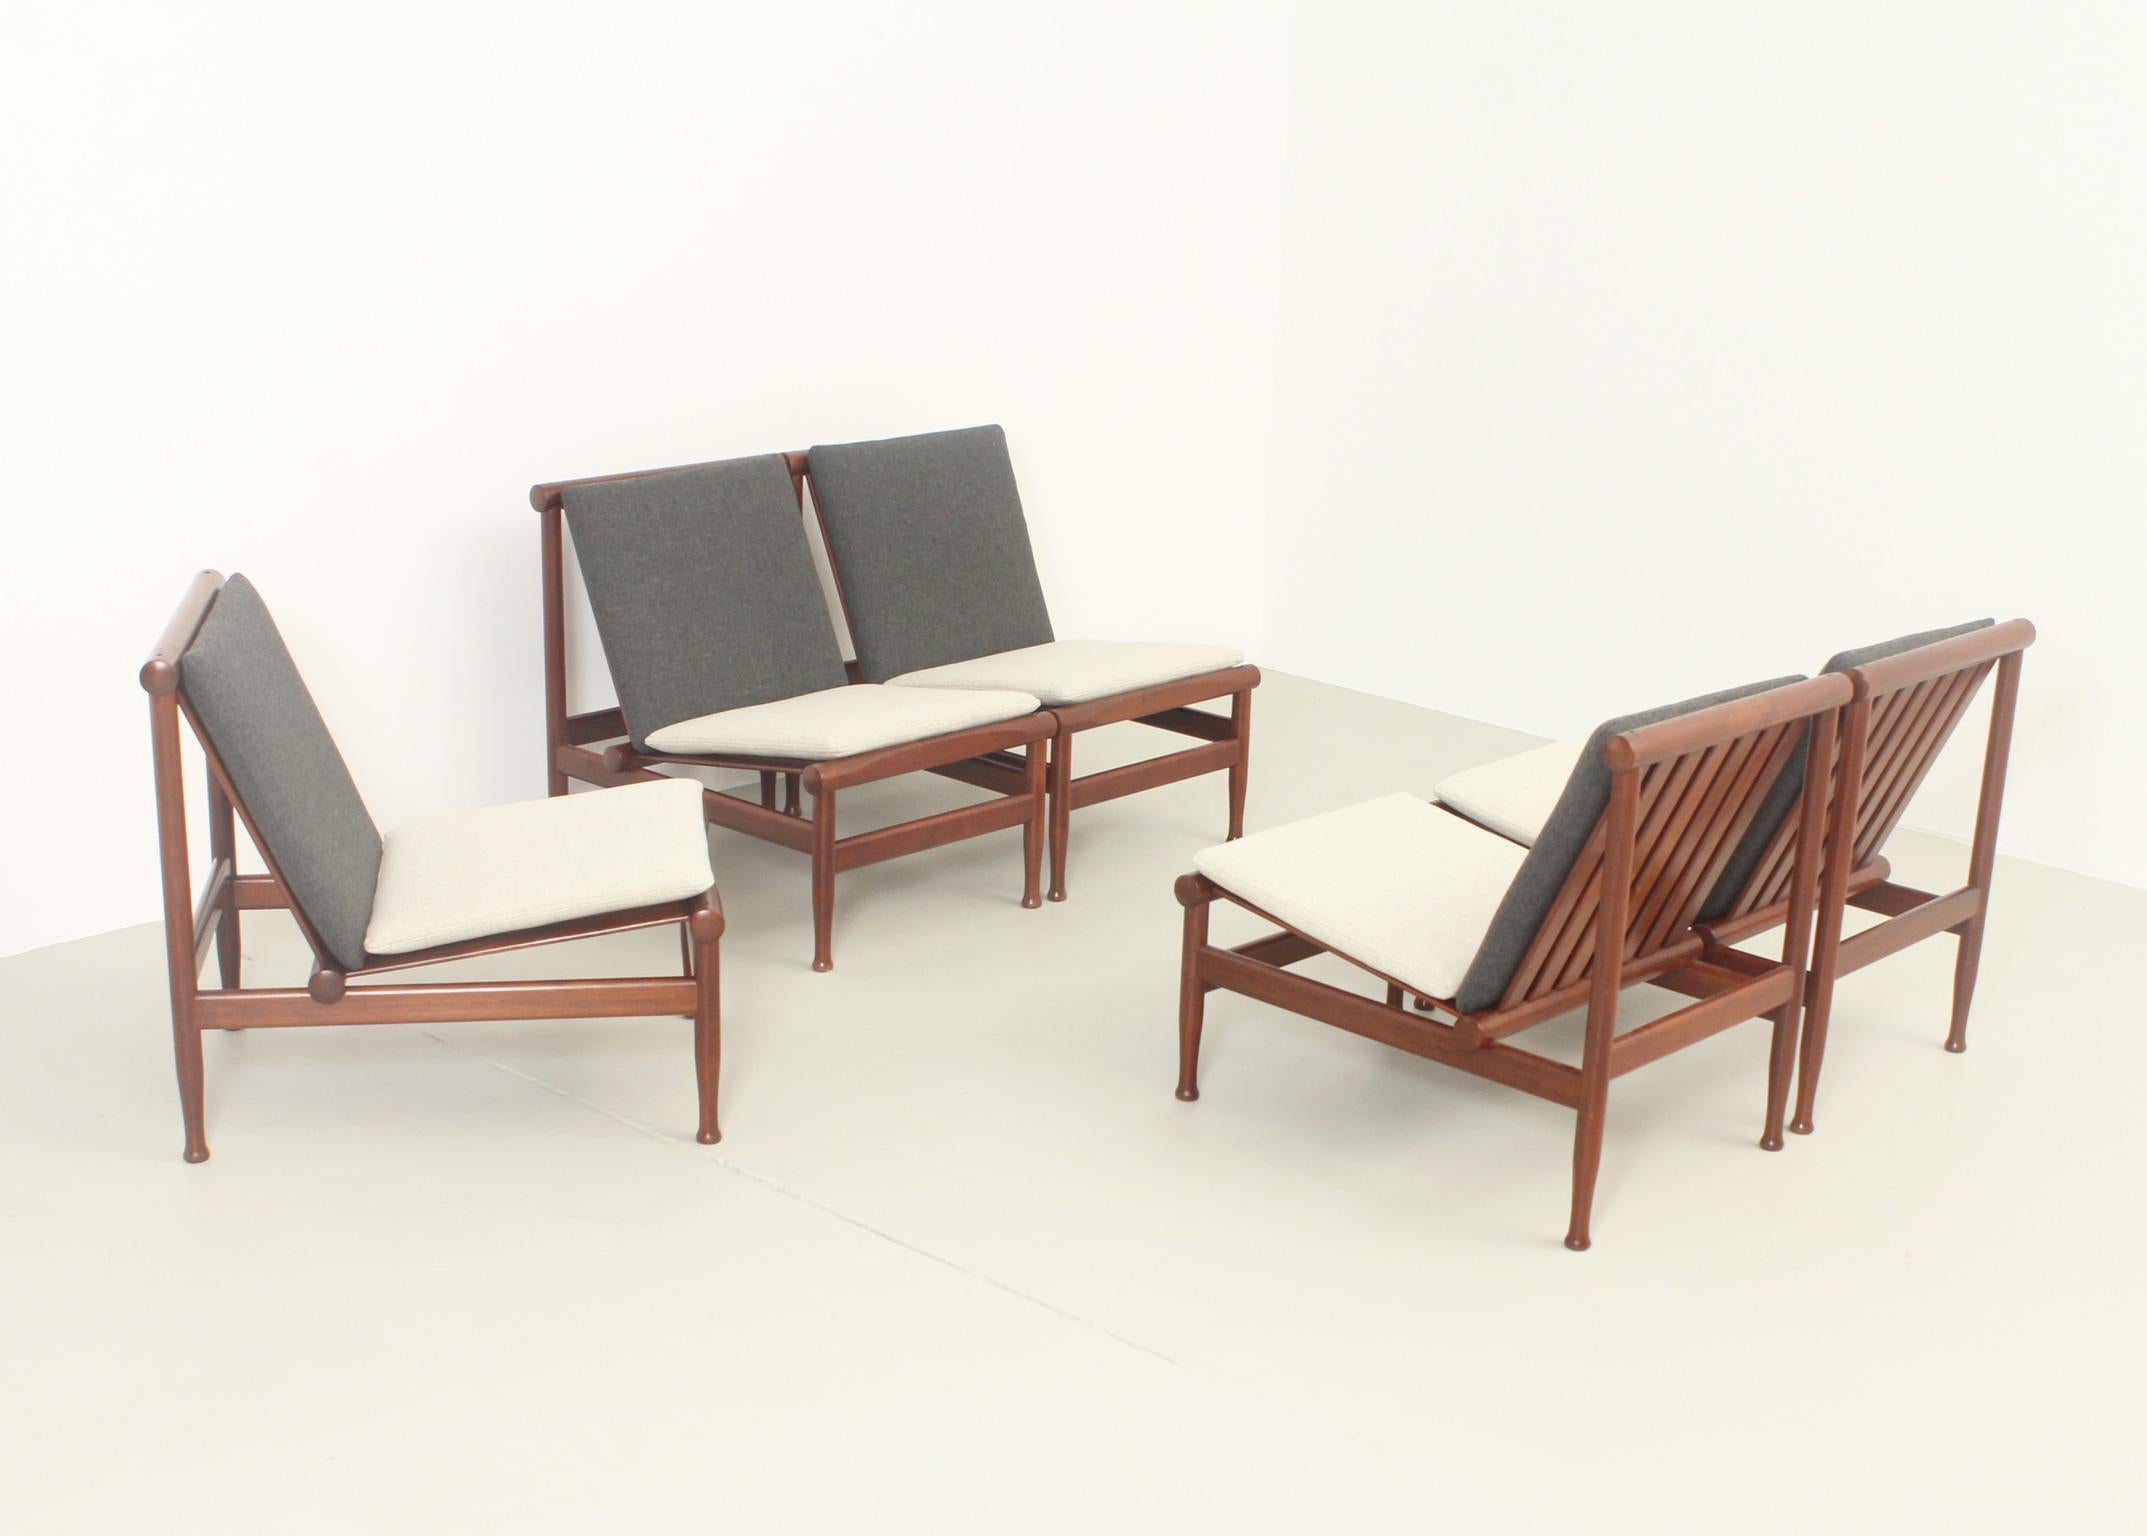 Japan Easy Chairs by Kai Lyngfeldt Larsen for Søborg, Denmark, 1950's For Sale 4